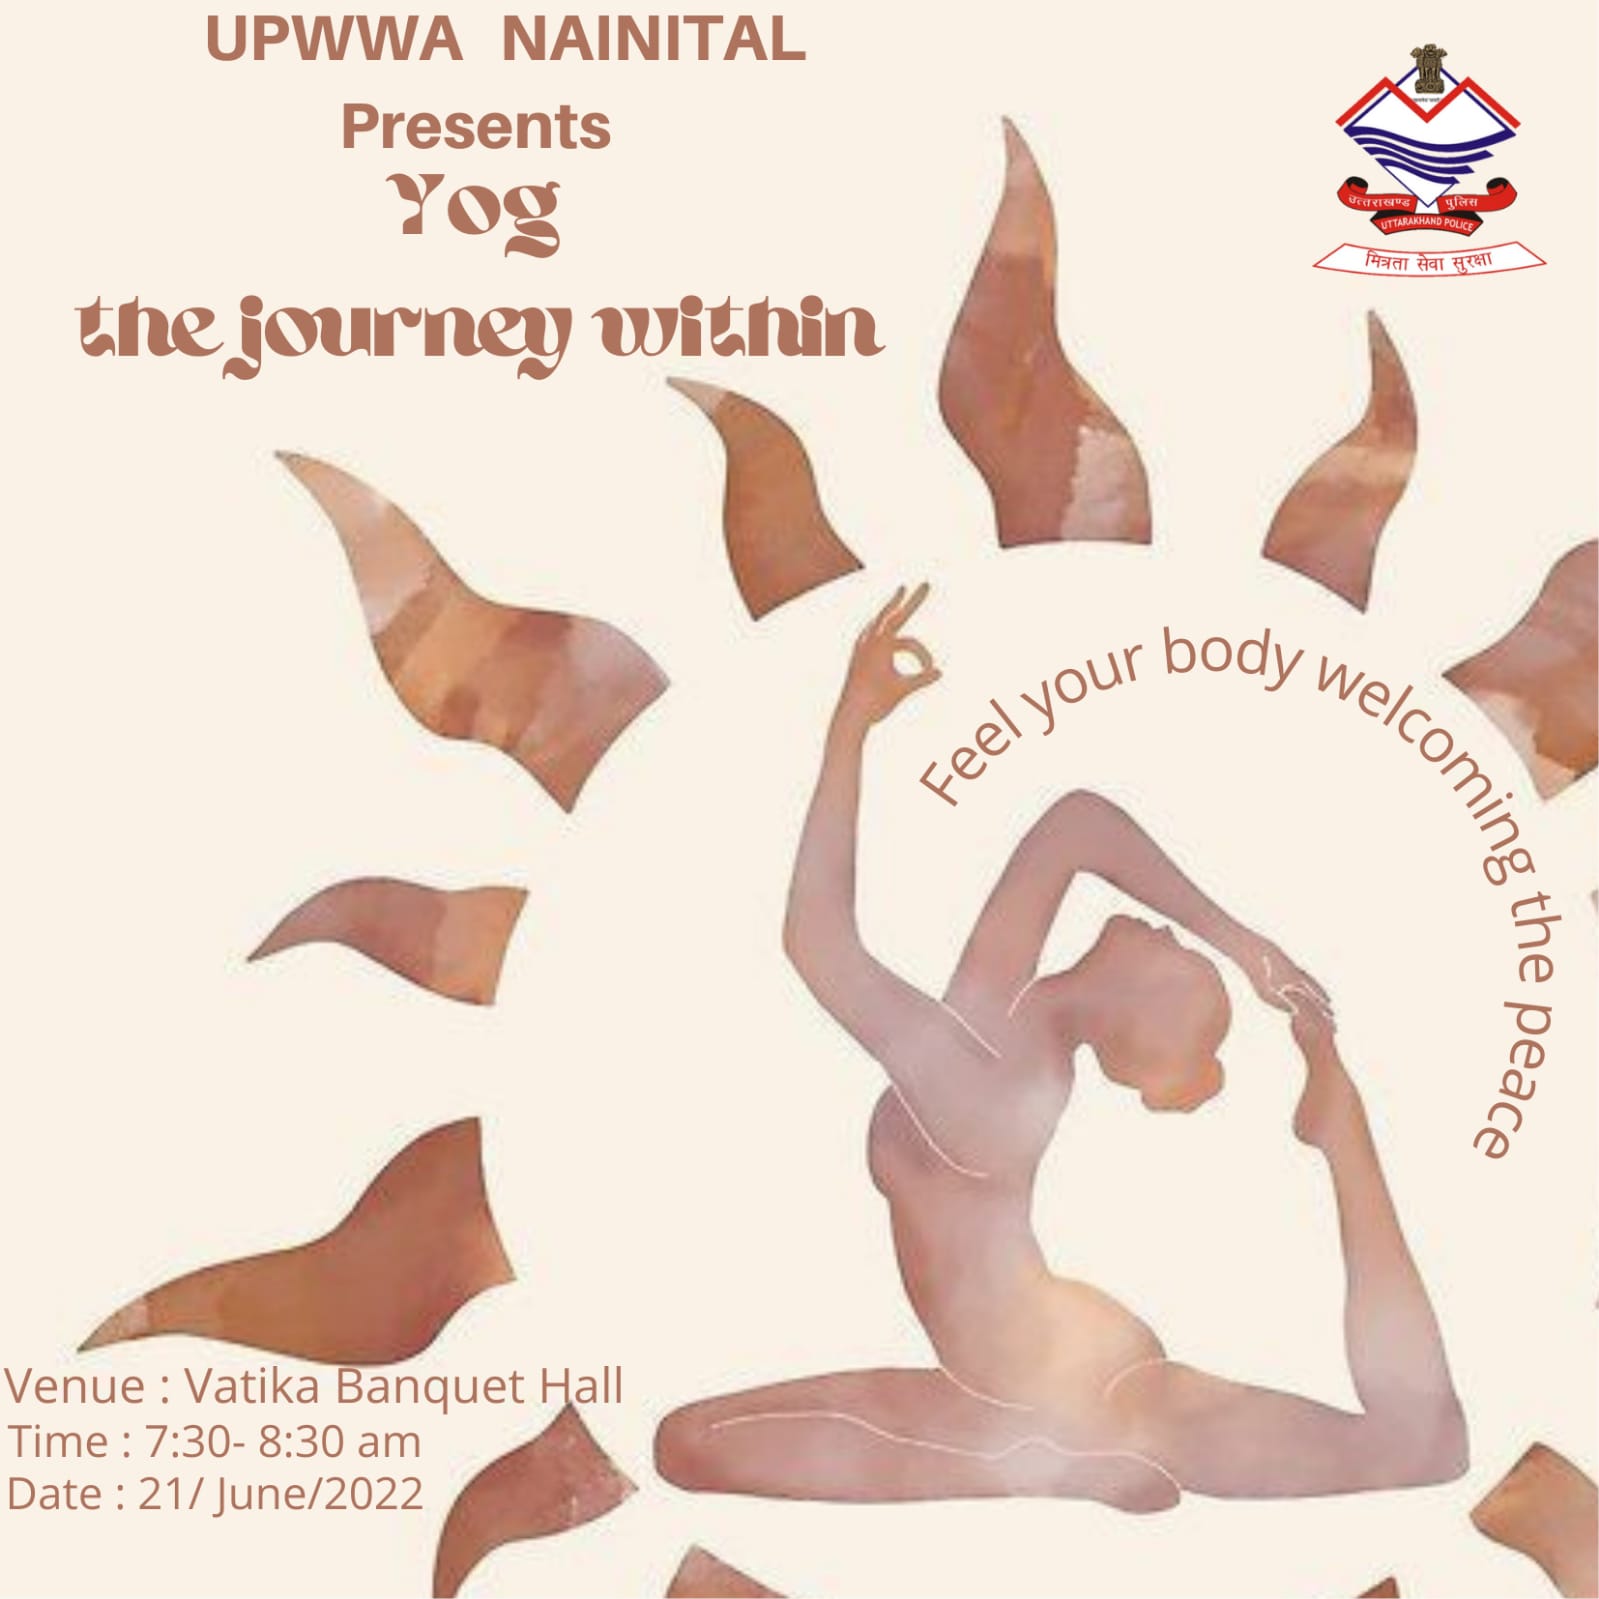 अंतर्राष्ट्रीय योग दिवस के अवसर पर UPWWA द्वारा आयोजित बृहद योग शिविर का आयोजन